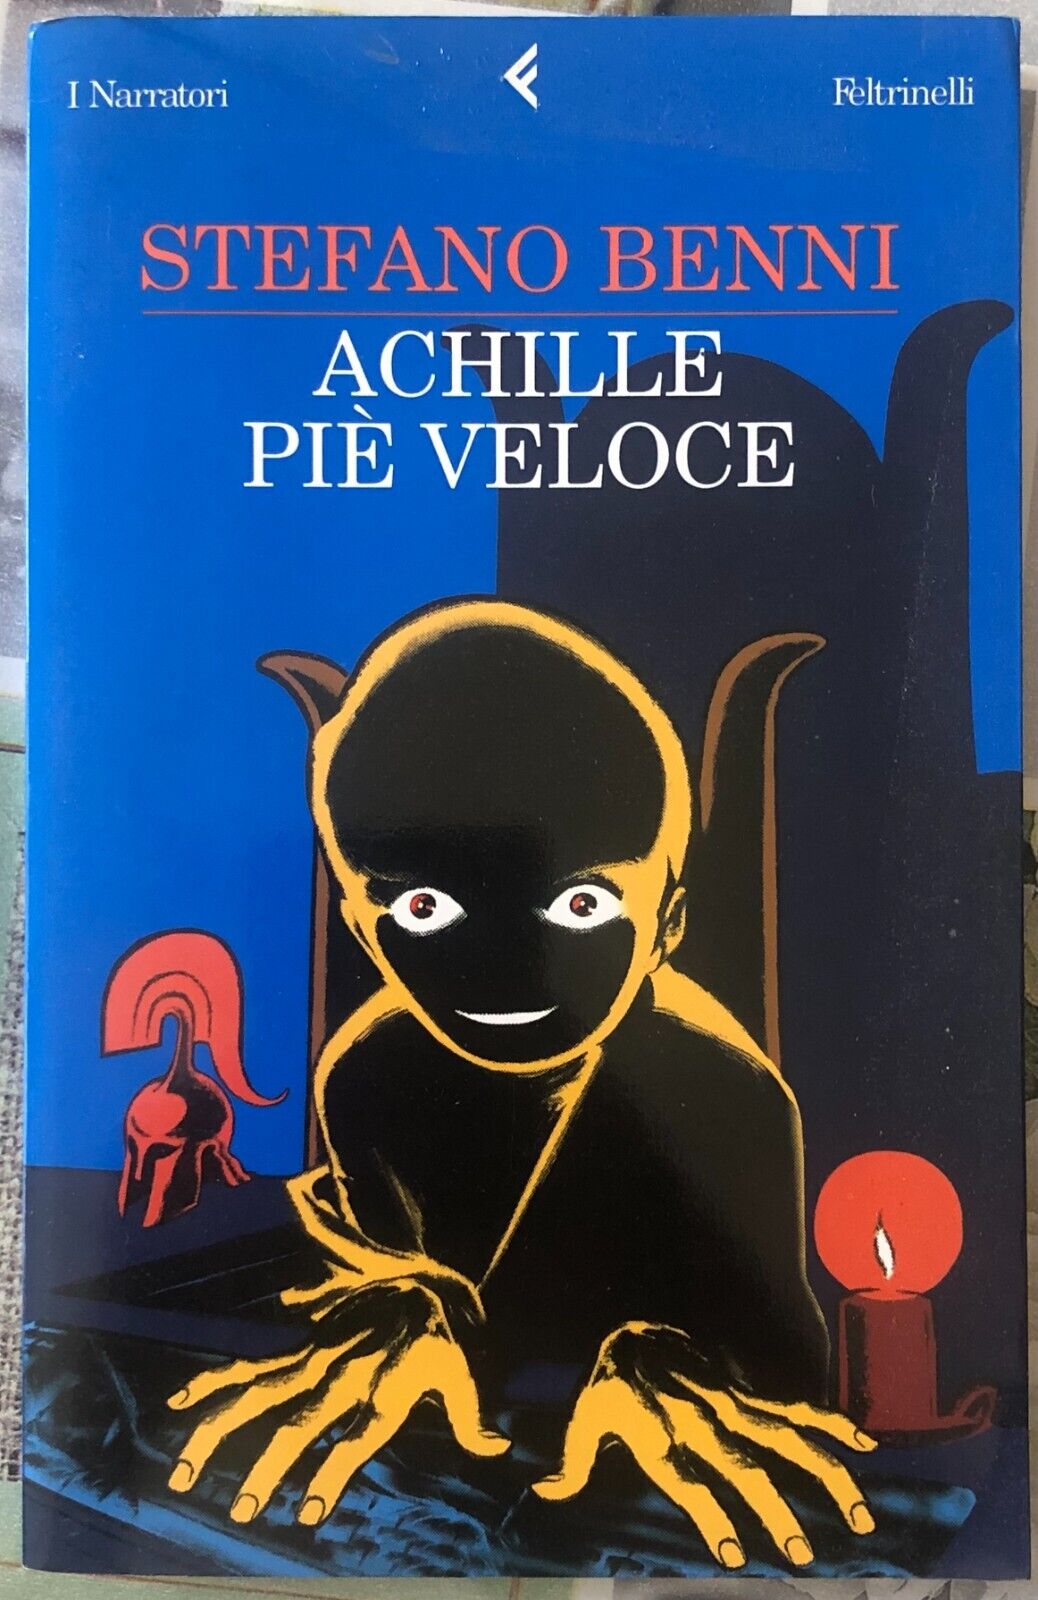 Achille pi? veloce di Stefano Benni,  2003,  Feltrinelli Editore